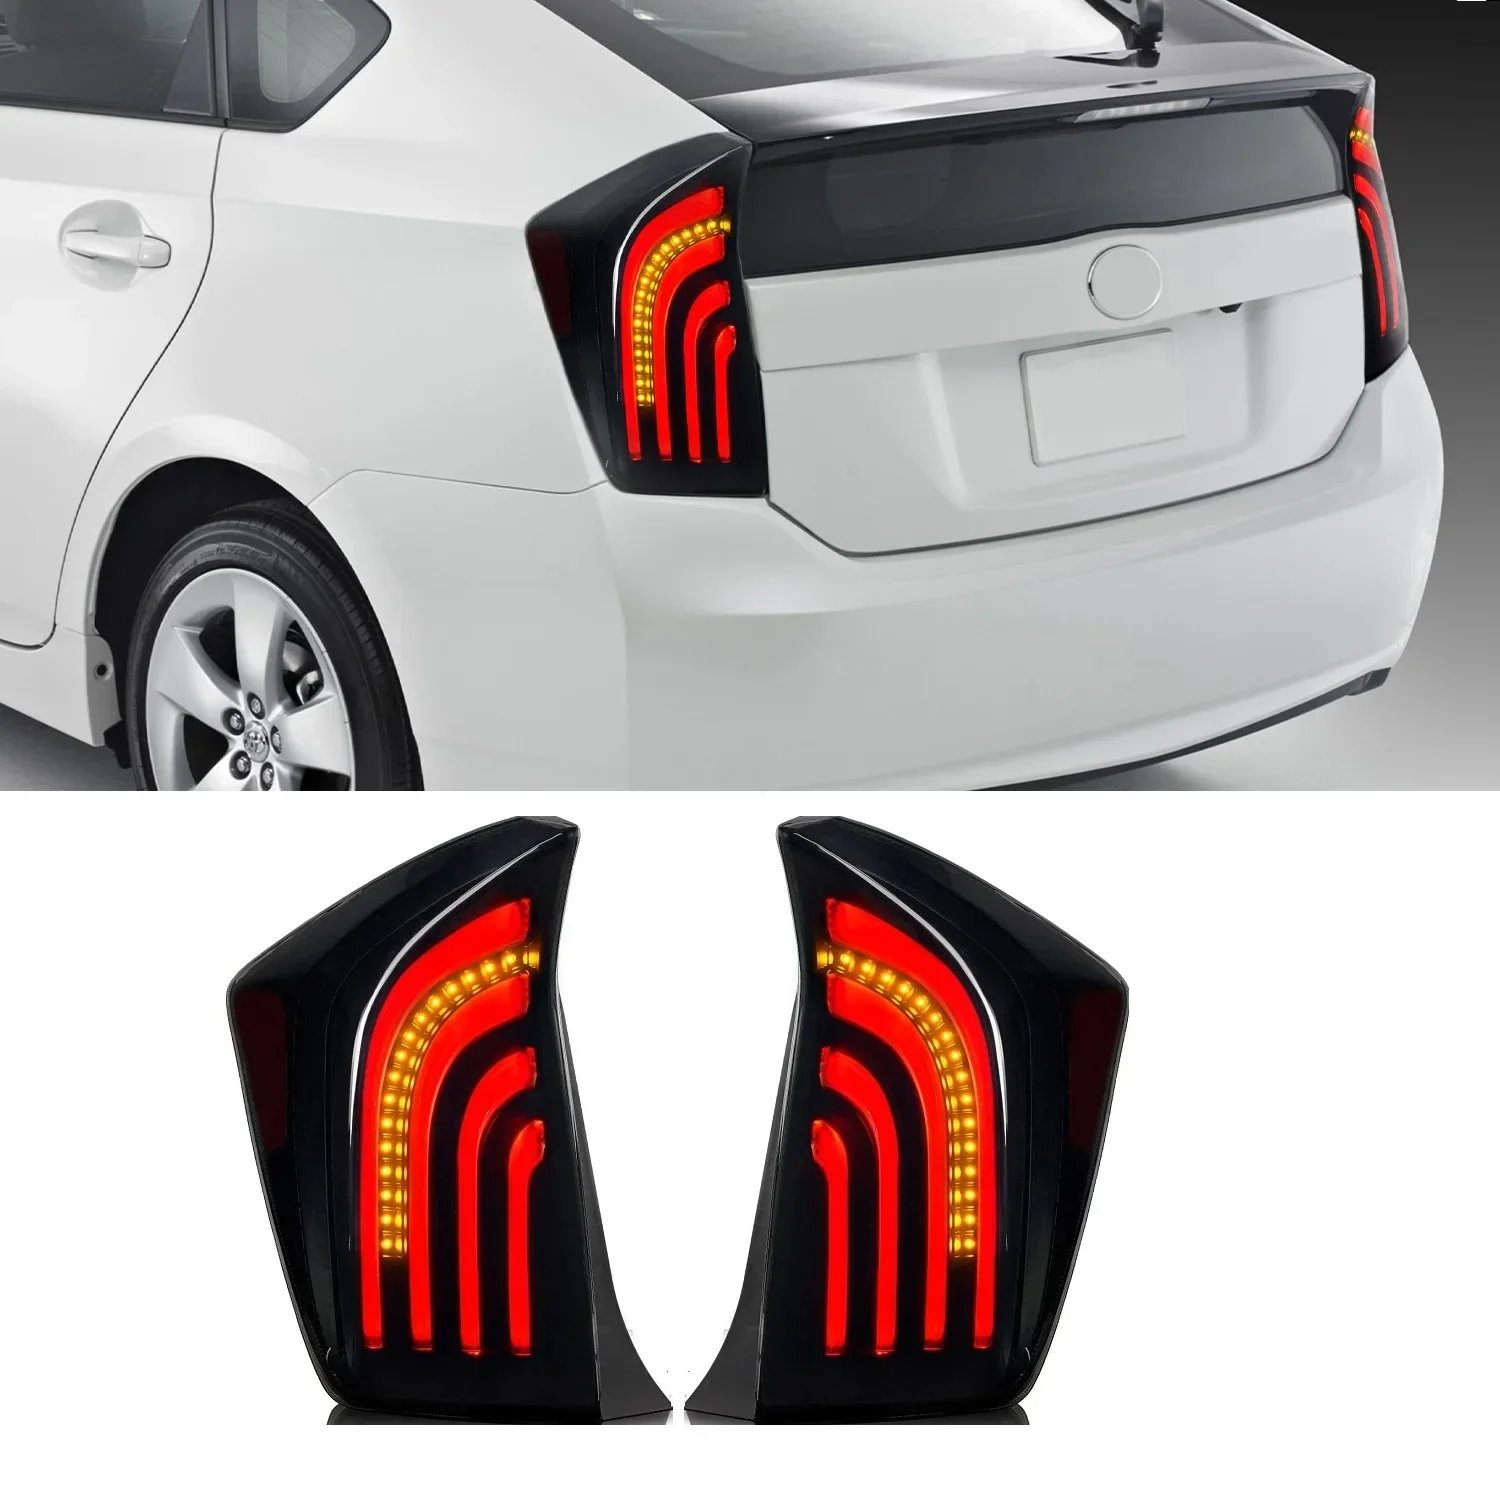 Задние задние фонари, подходящие для Prius 2010 2011 2012 2013 2014 2015, задние задние фонари, свет в сборе, автоаксессуары, стоп-сигналы